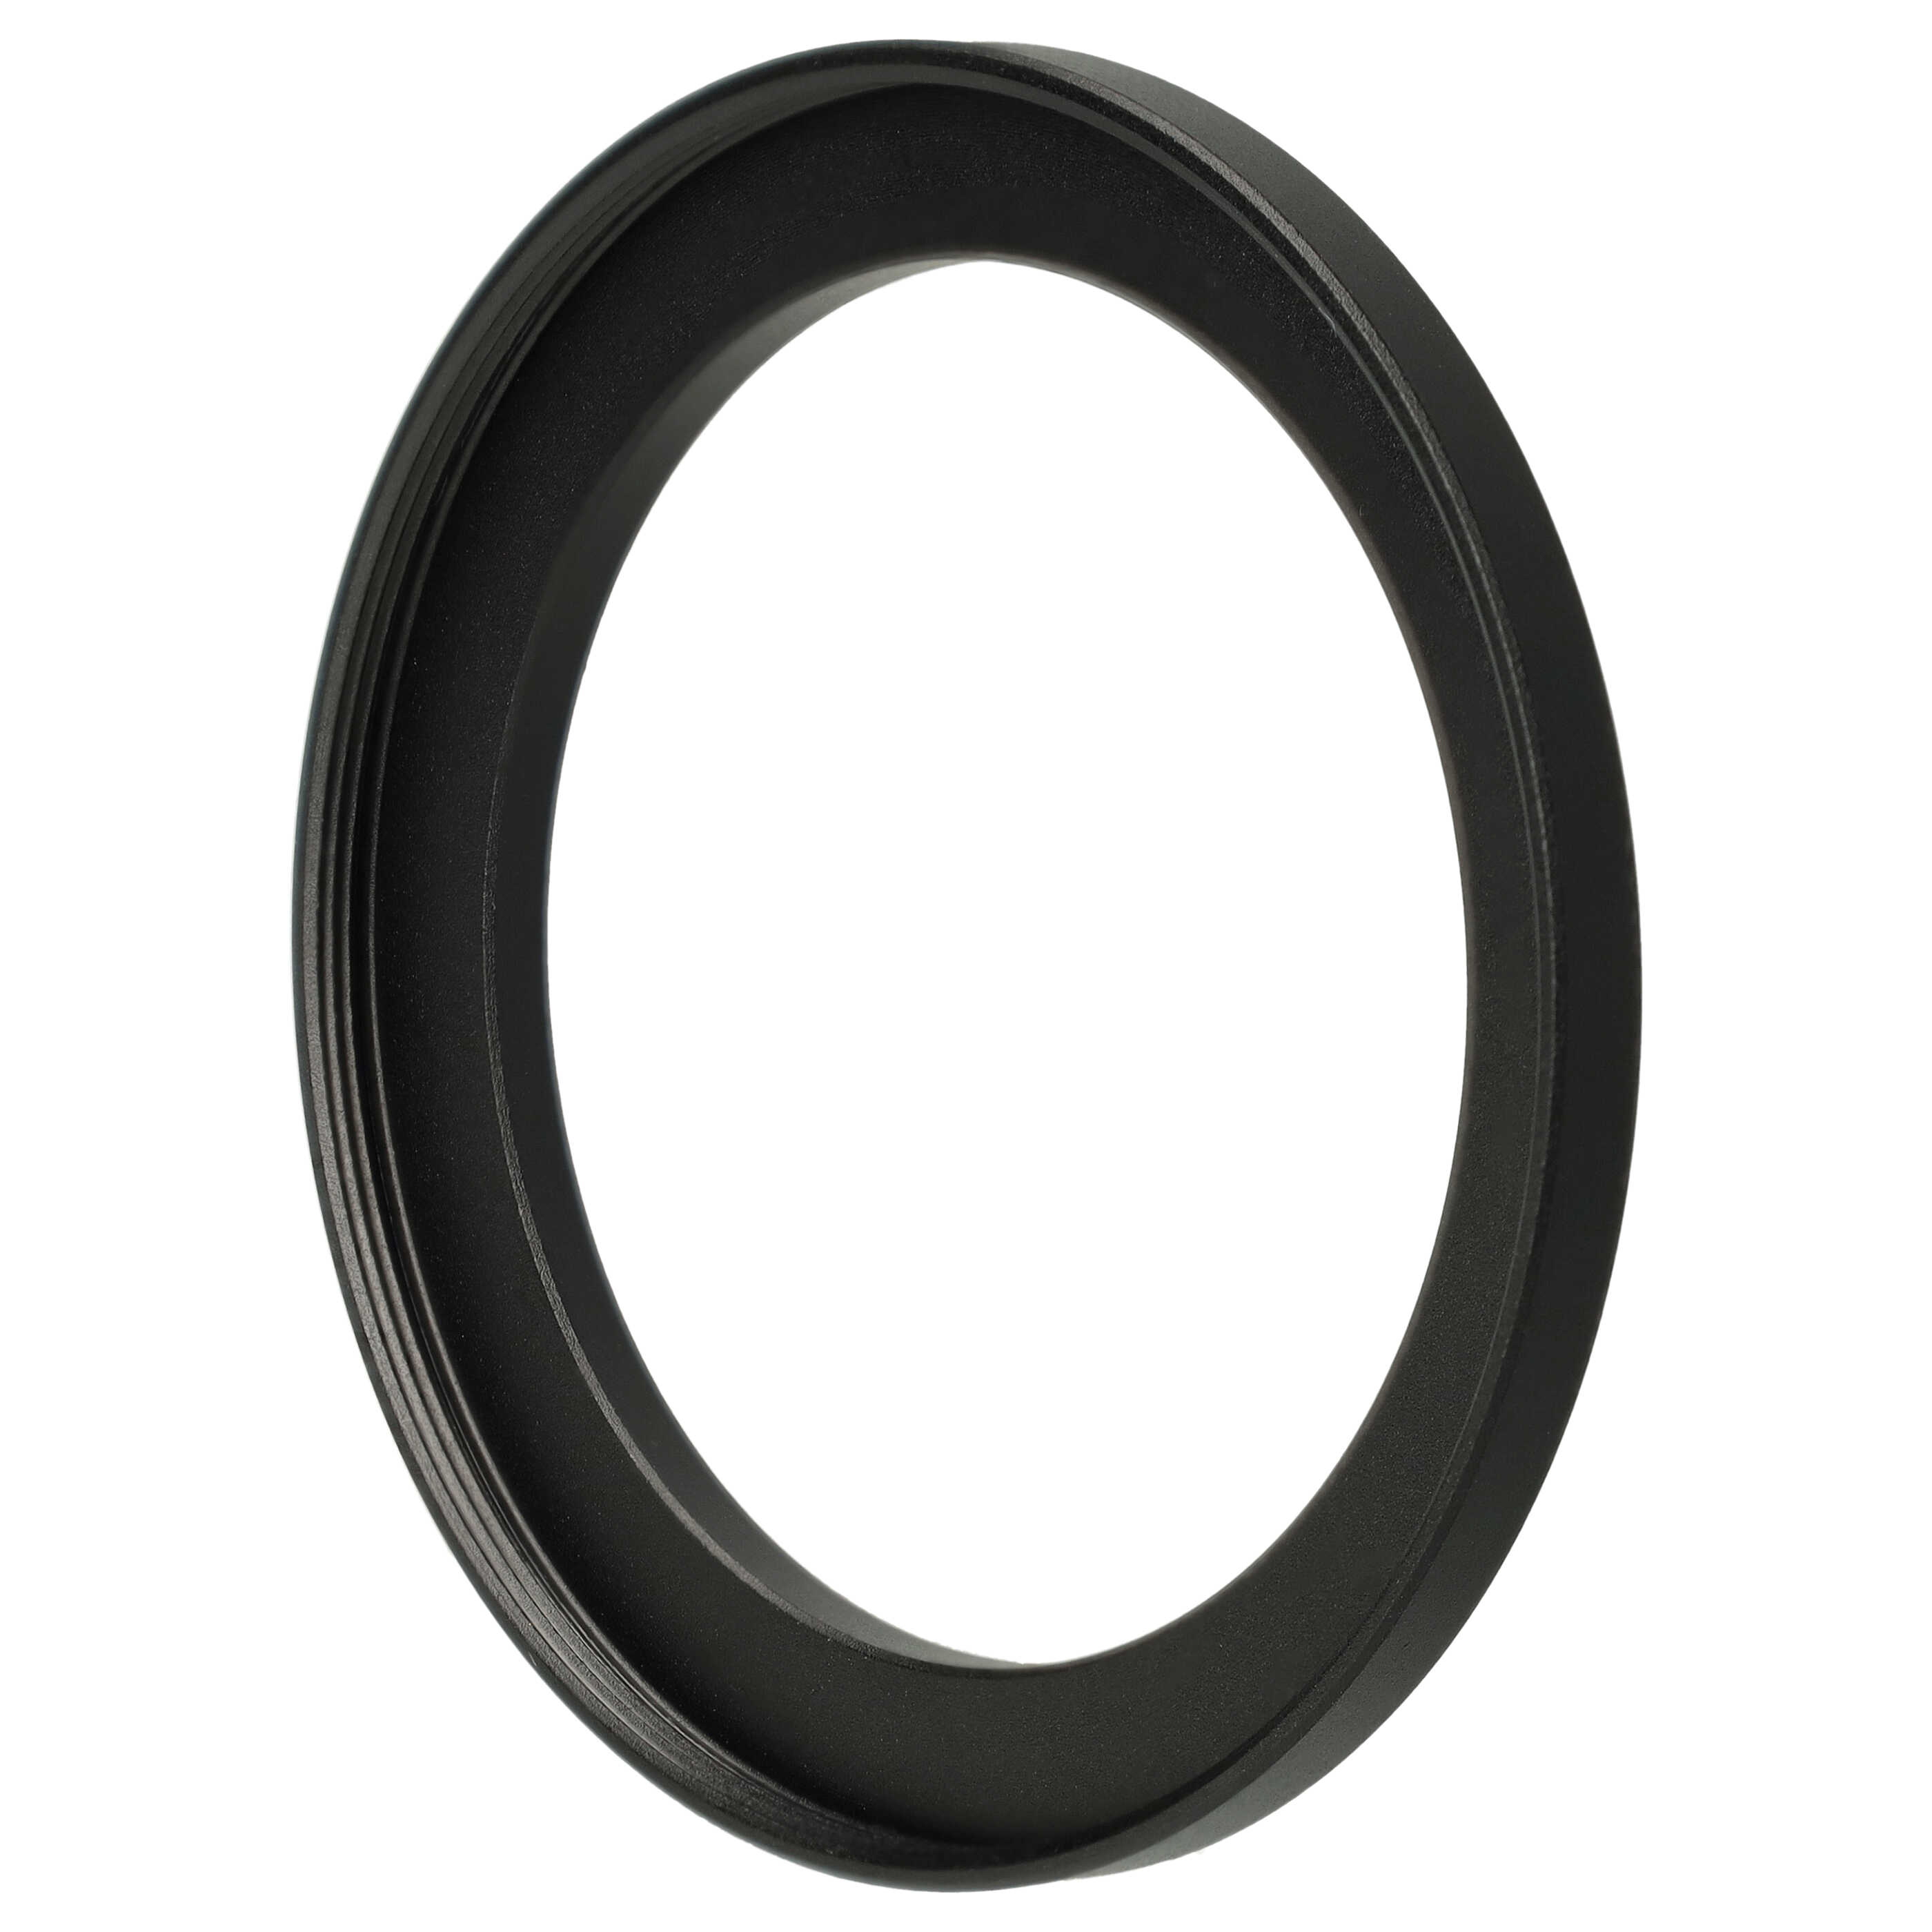 Step-Up-Ring Adapter 49 mm auf 58 mm passend für diverse Kamera-Objektive - Filteradapter